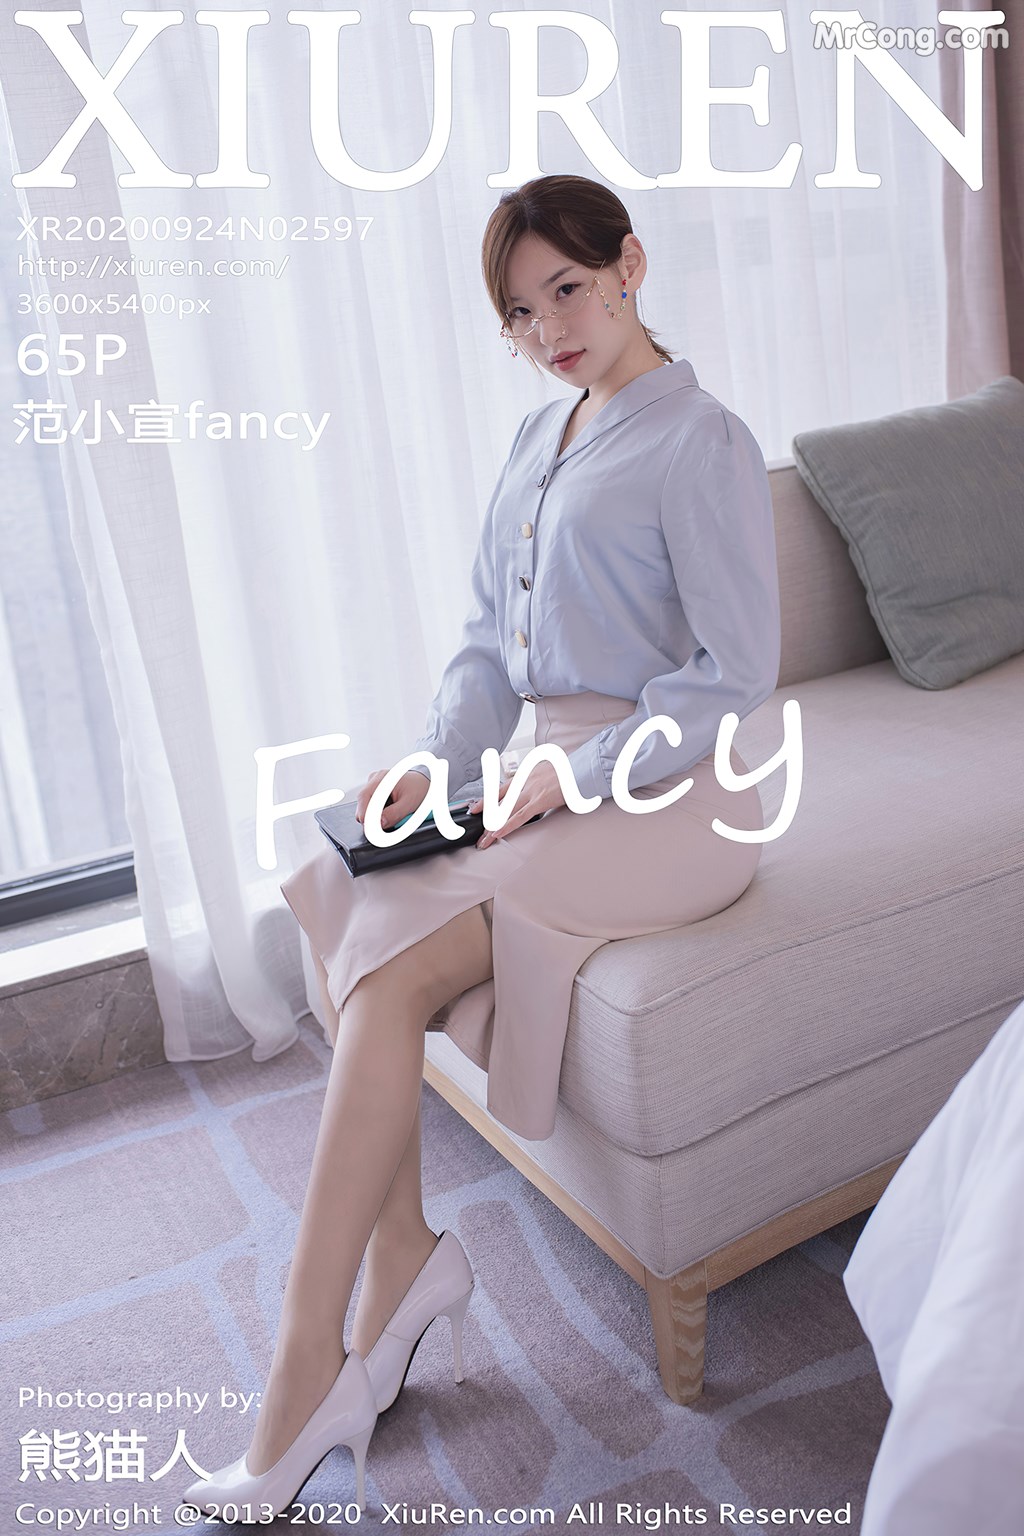 [XIUREN] No.2597 范小宣fancy Cover Photo